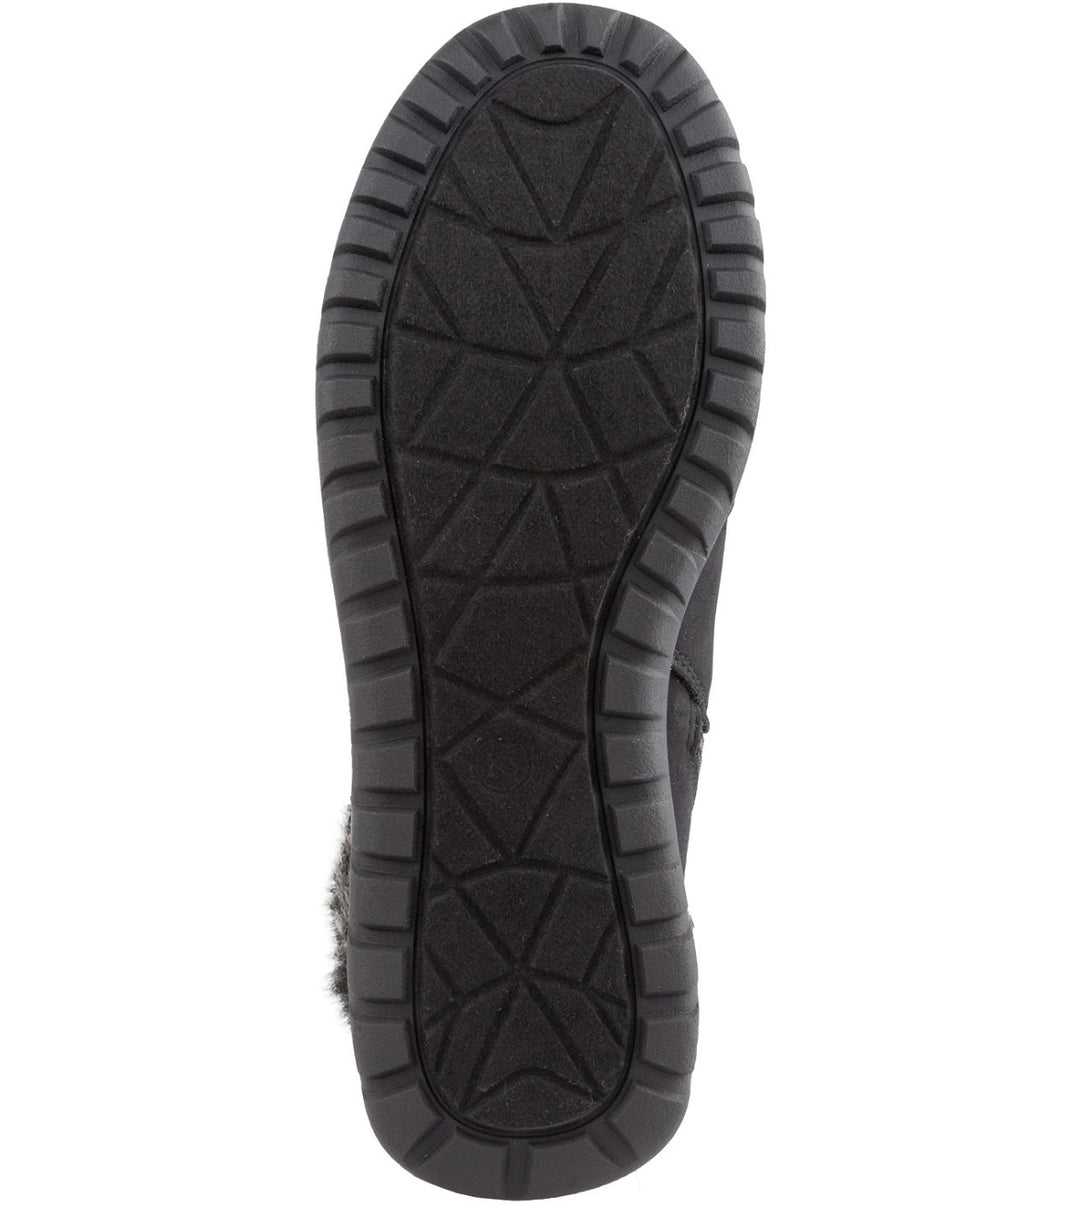 Karen Scott Women's Wanona Lace-Up Boots Black Size 10M